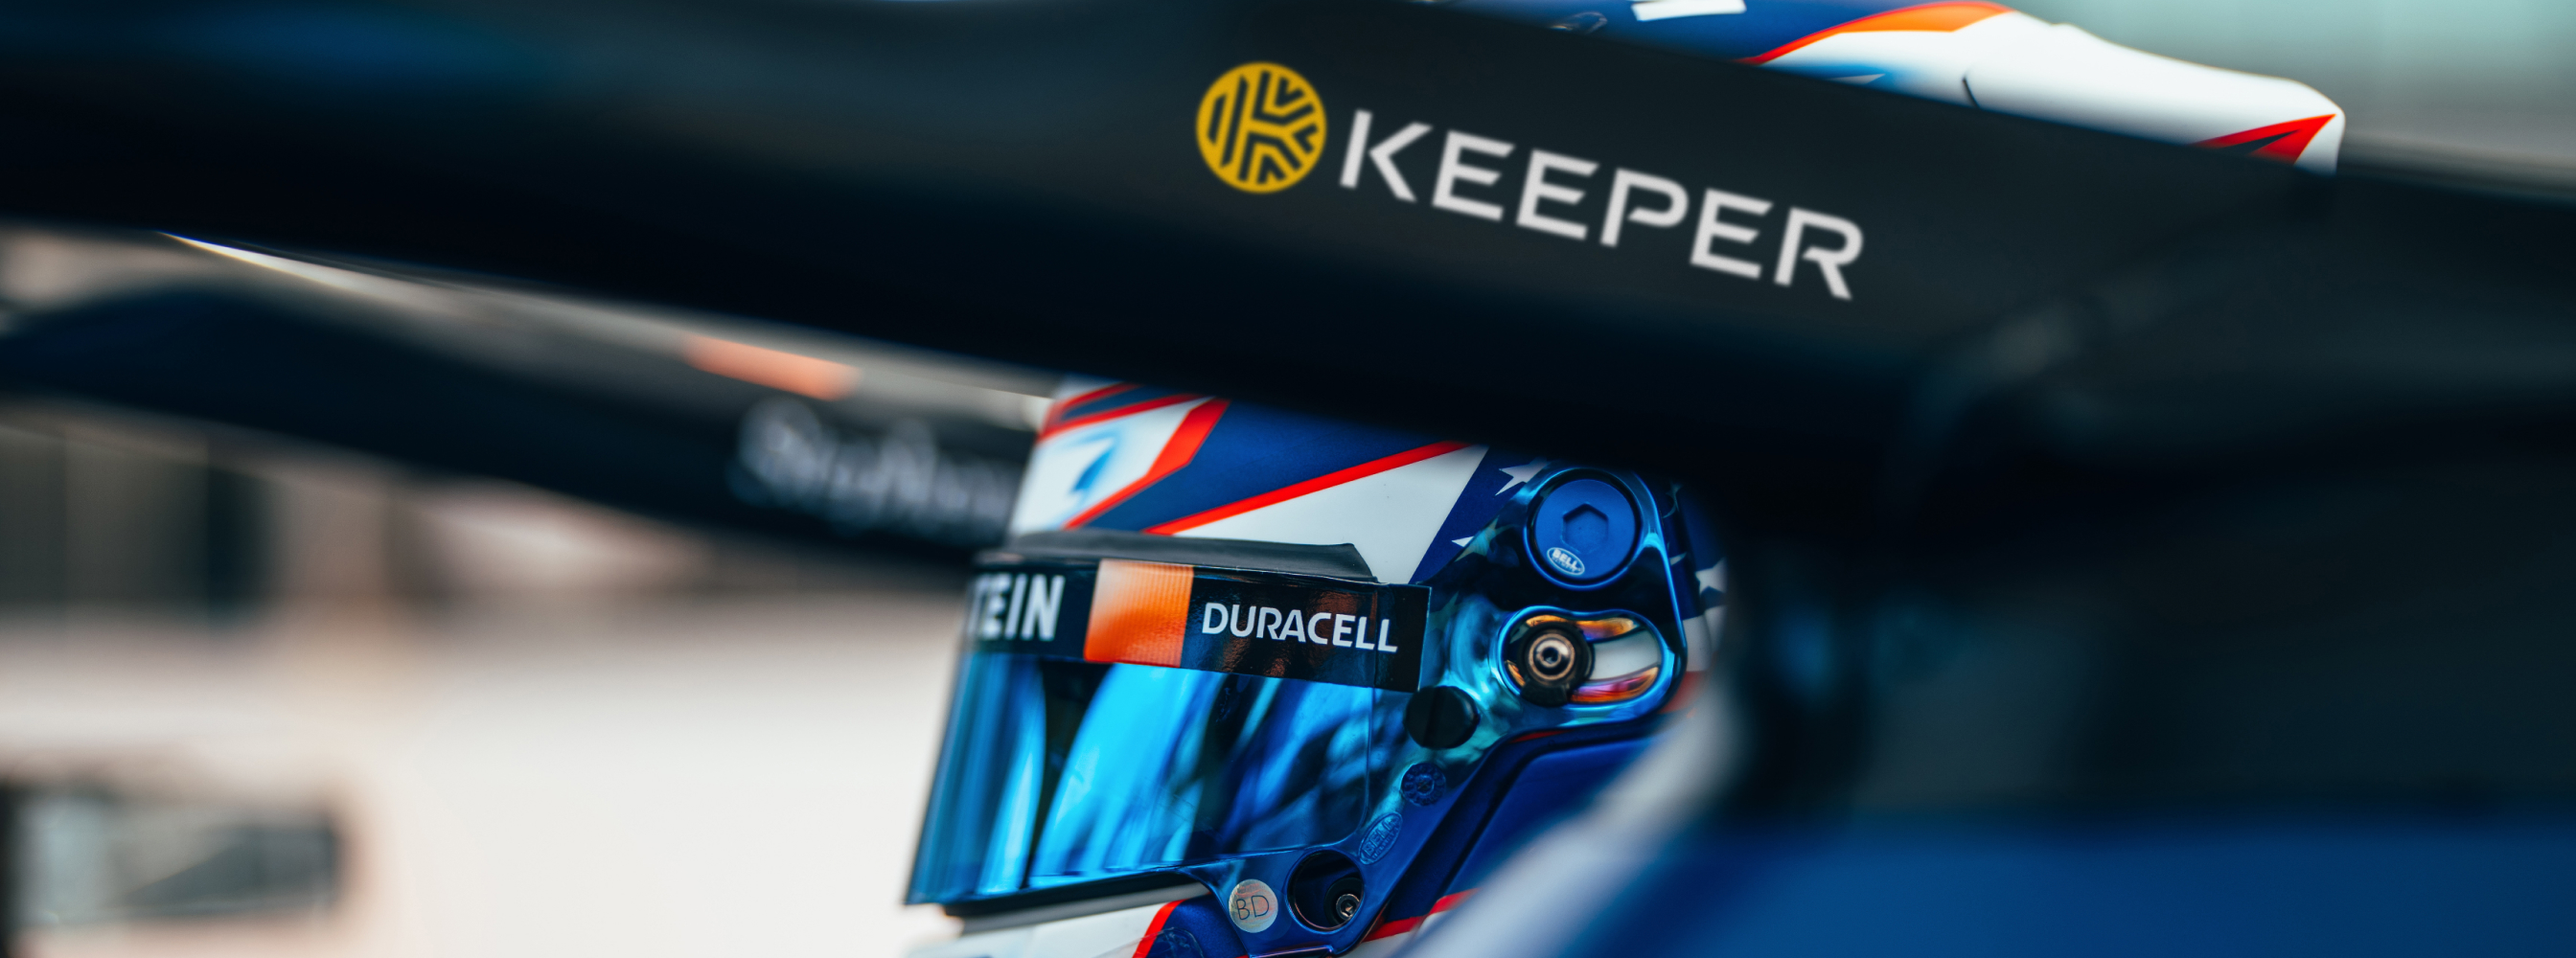 Keeper x Williams Racing - Innovatie versnellen